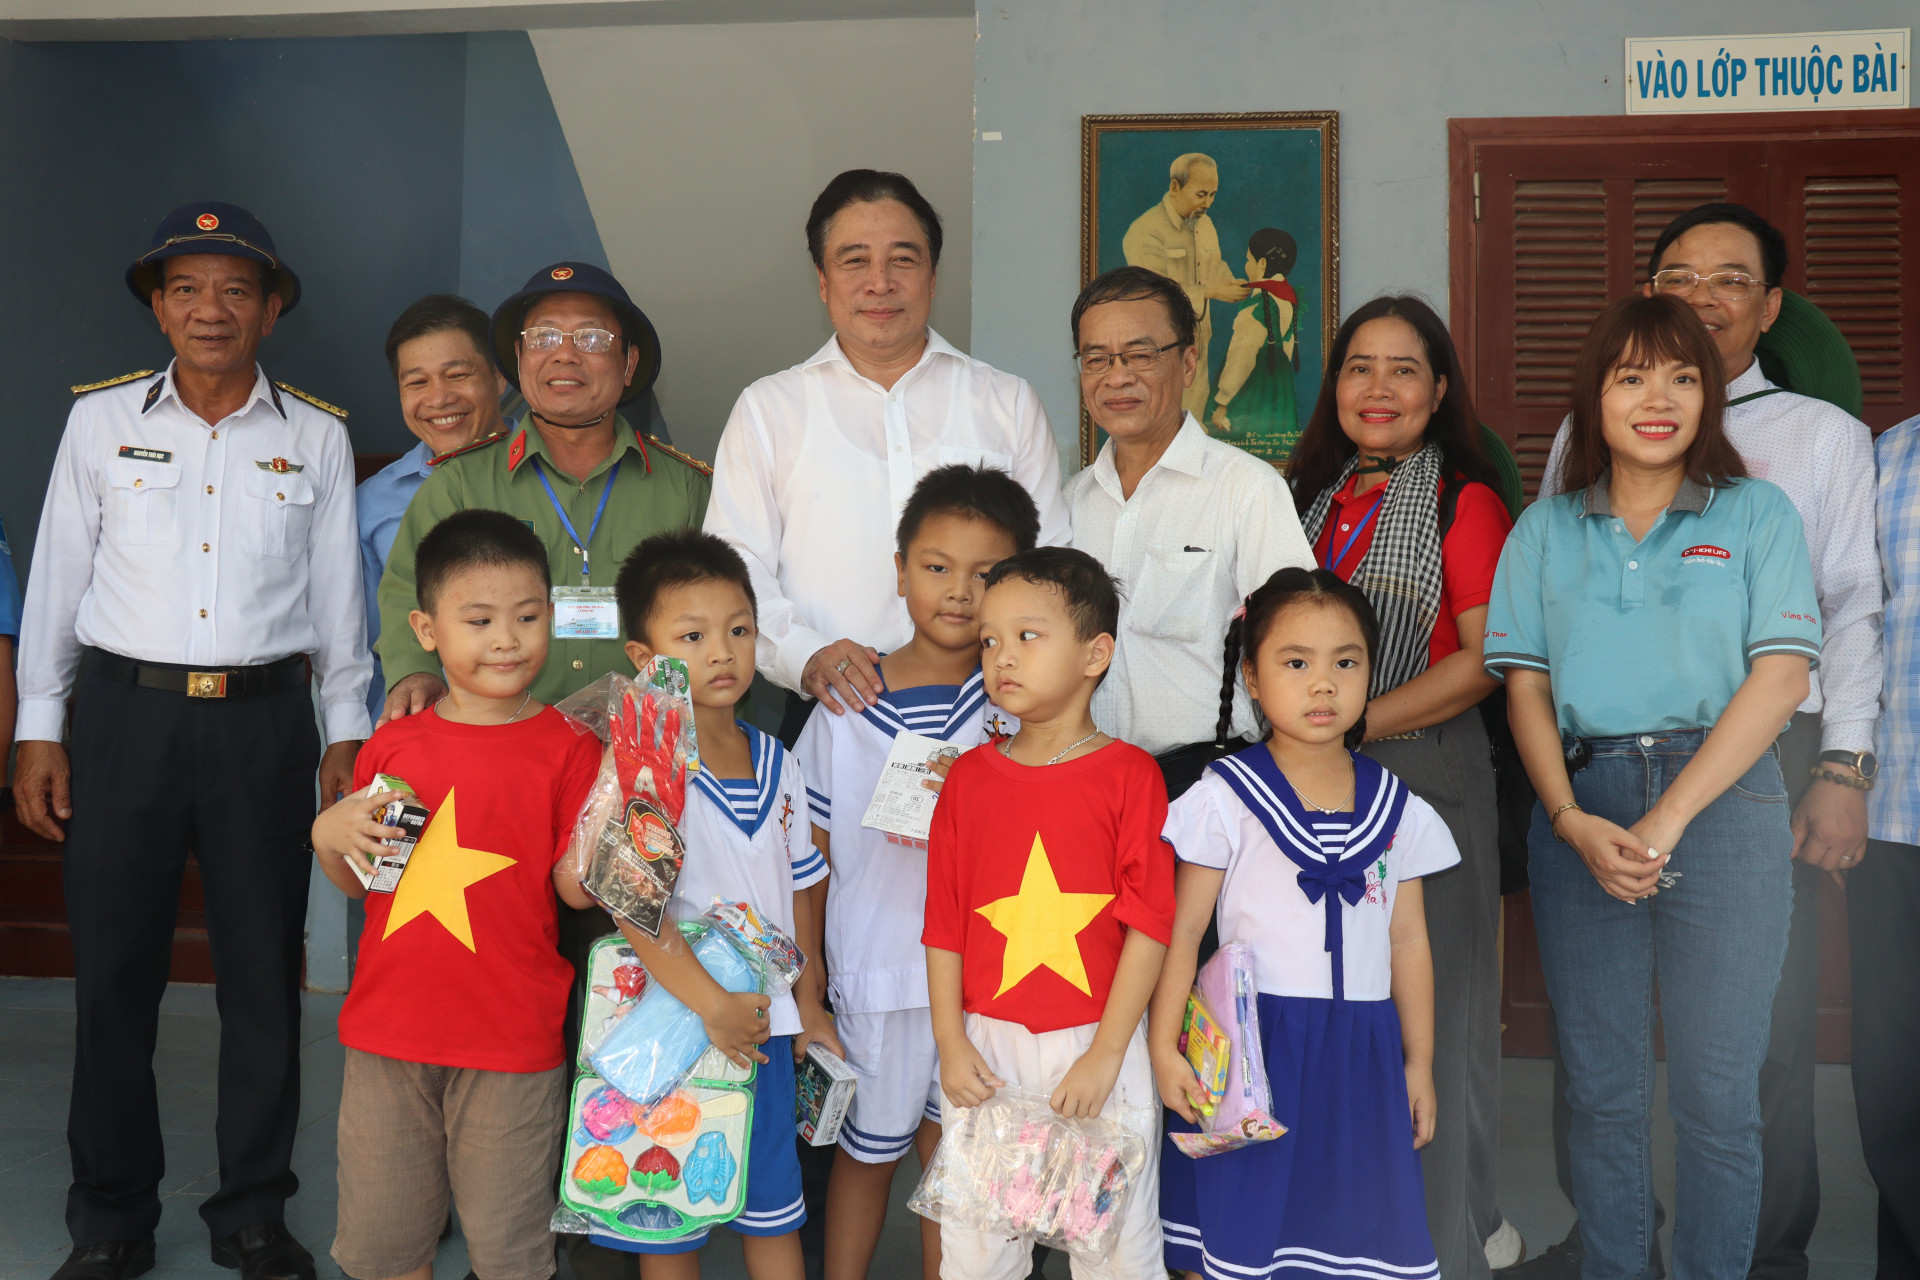 Phó Bí thư Thường trực Nguyễn Khắc Toàn cùng đoàn công tác thăm các cháu thiếu nhi ở xã Sinh Tồn.
